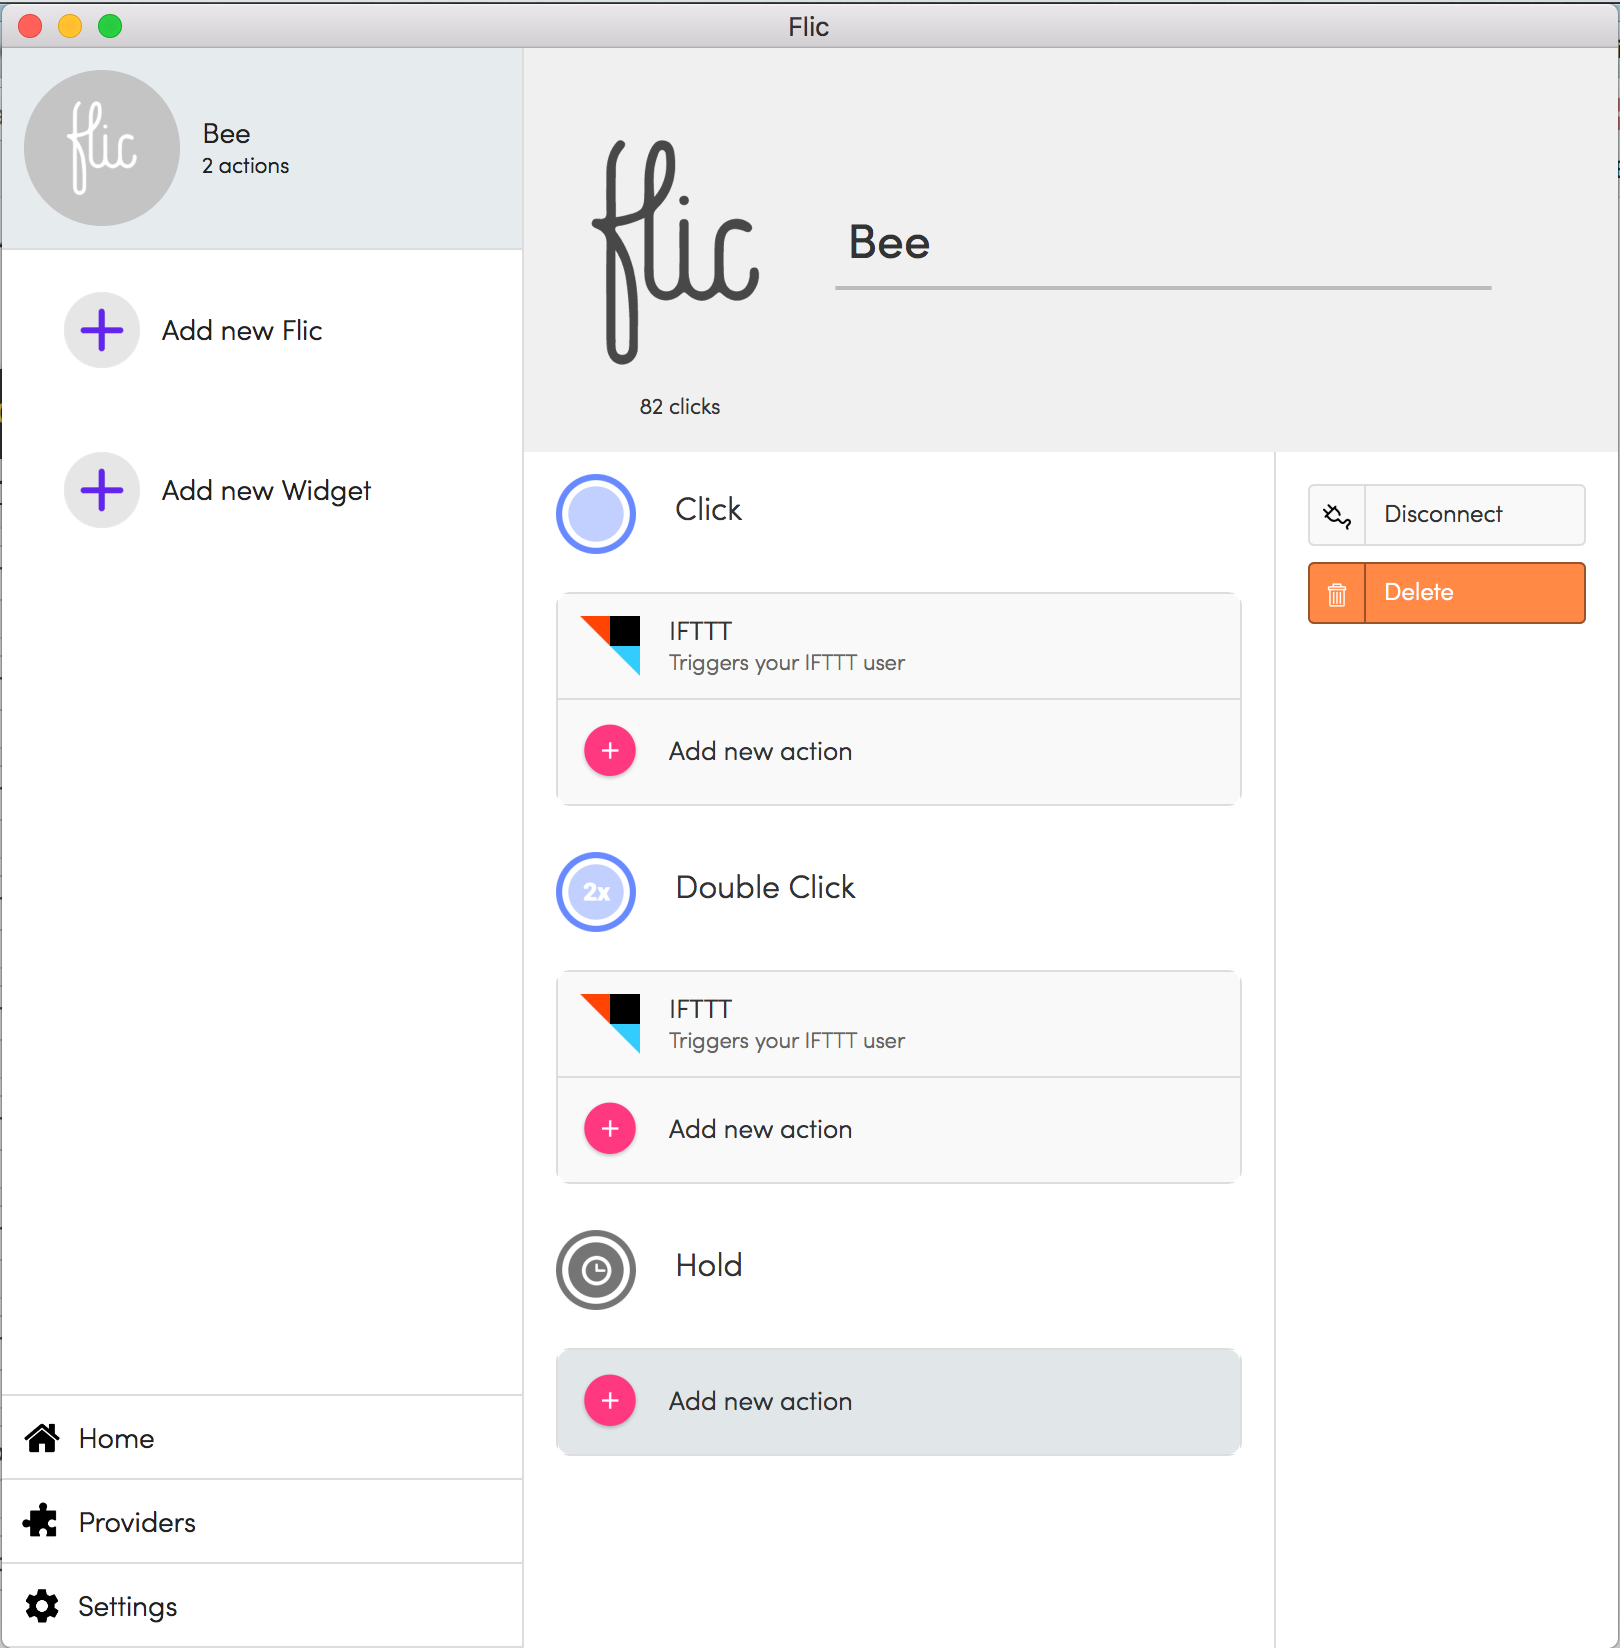 screenshot of the Flic desktop app